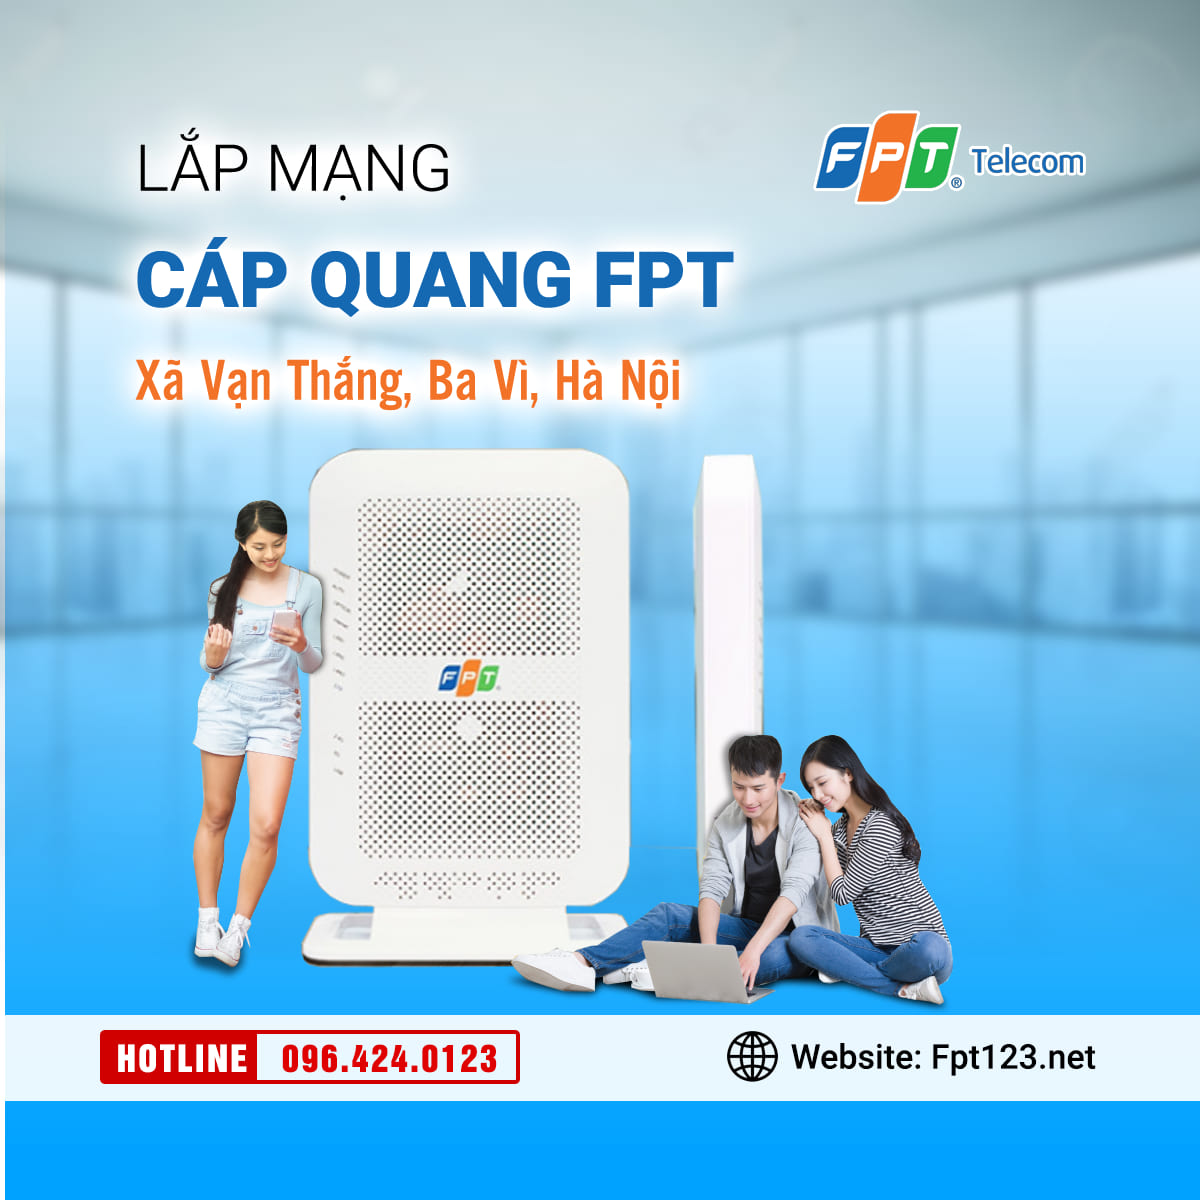 Lắp mạng cáp quang FPT ở xã Vạn Thắng, Ba Vì, Hà Nội